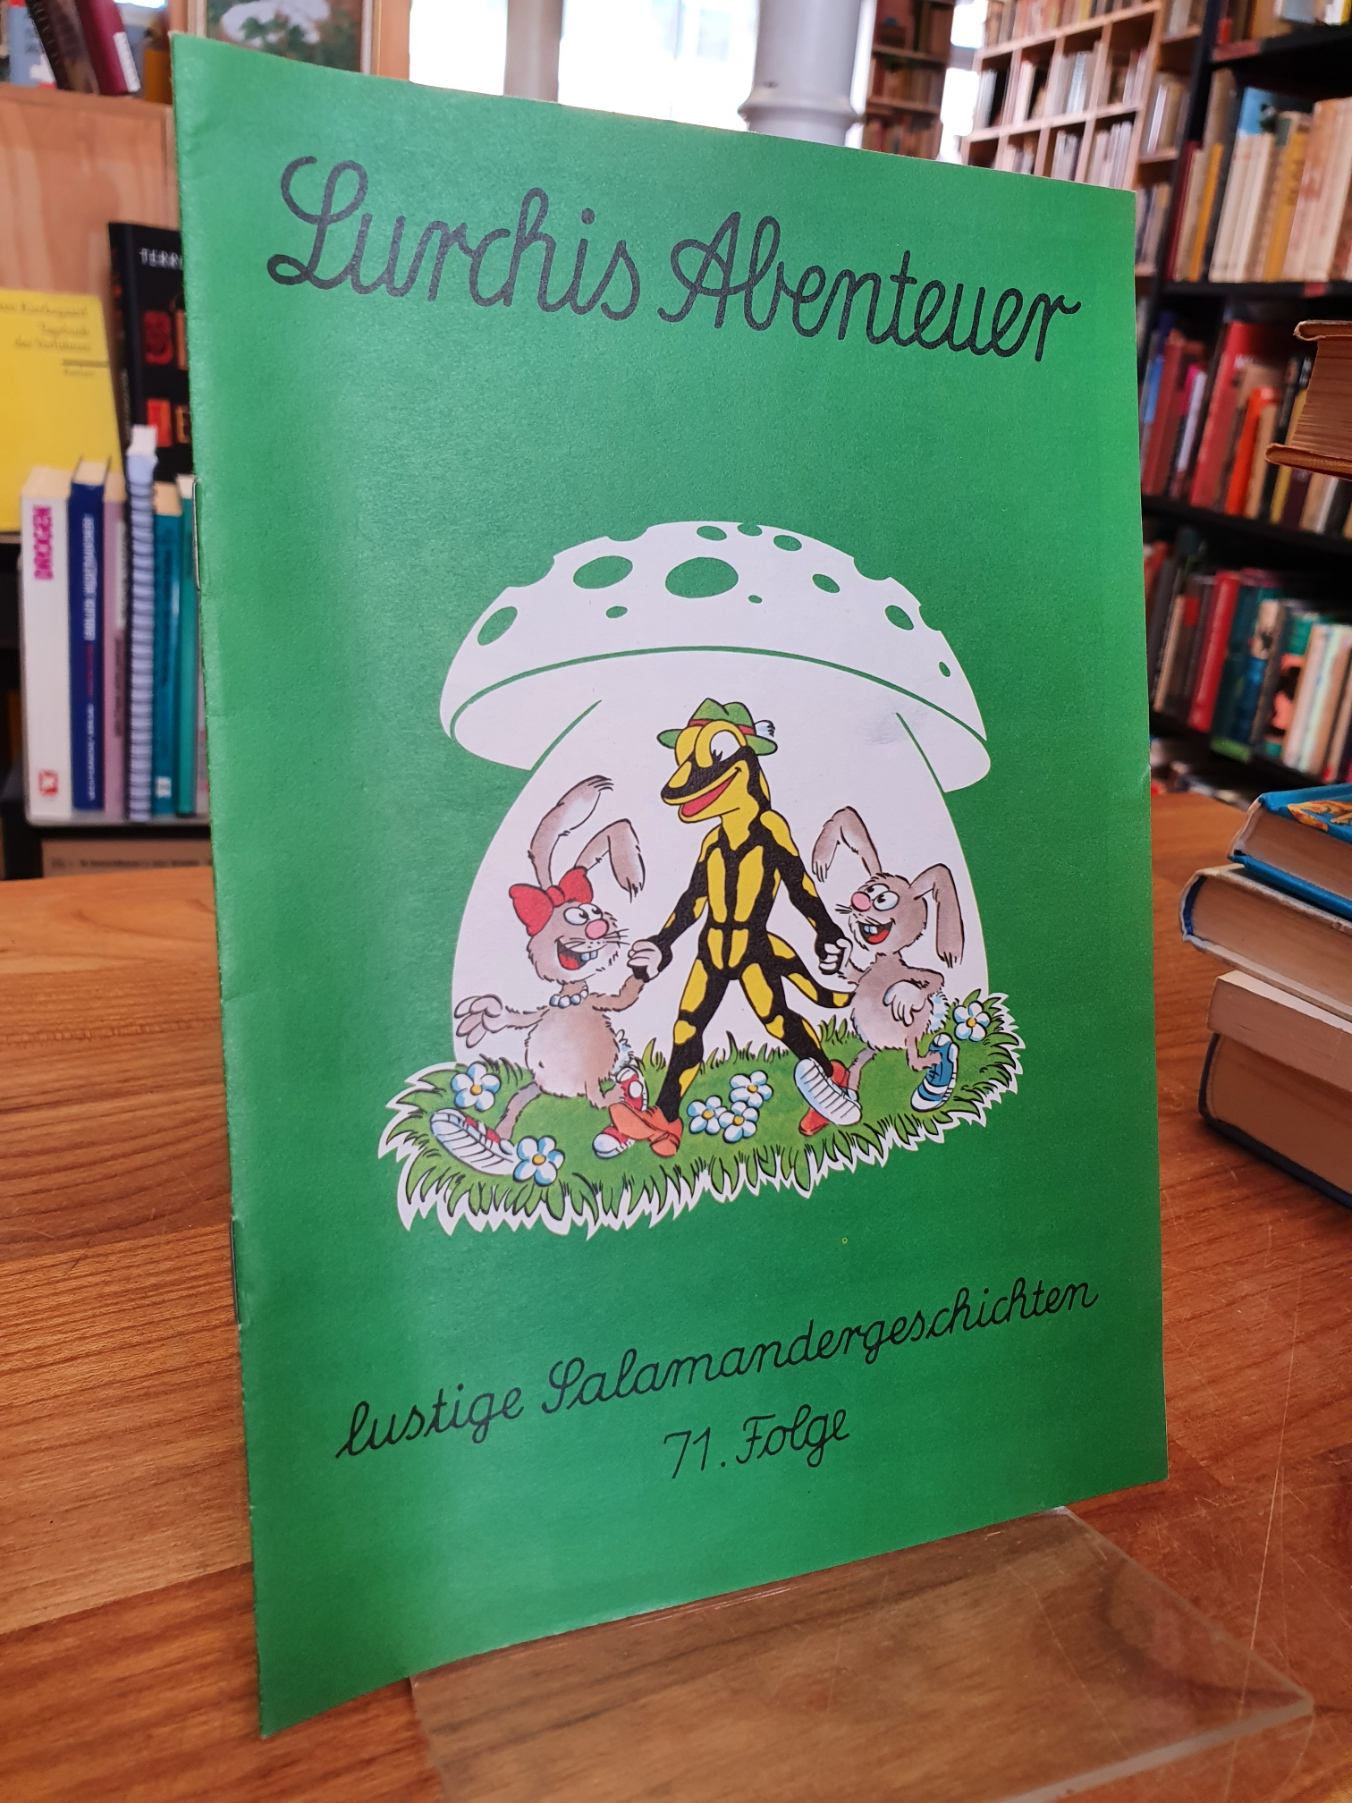 Salamander AG (Hrsg.), Lurchis Abenteuer – Lustige Salamandergeschichten, 71. Fo